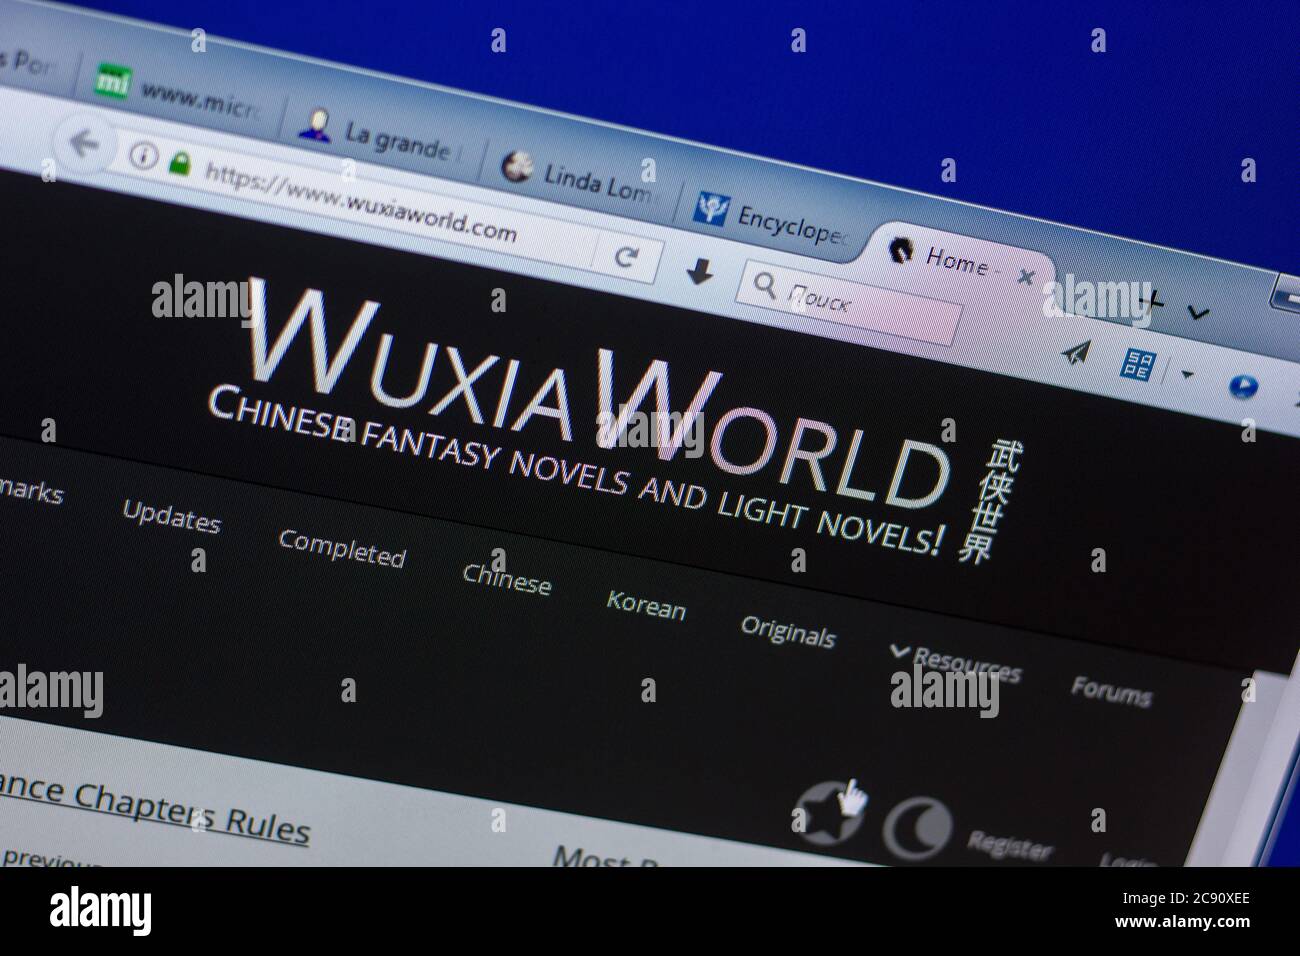 Ryazan, Rusia - 20 de mayo de 2018: Página de WuxiaWorld en la pantalla de PC, URL - WuxiaWorld.com Foto de stock